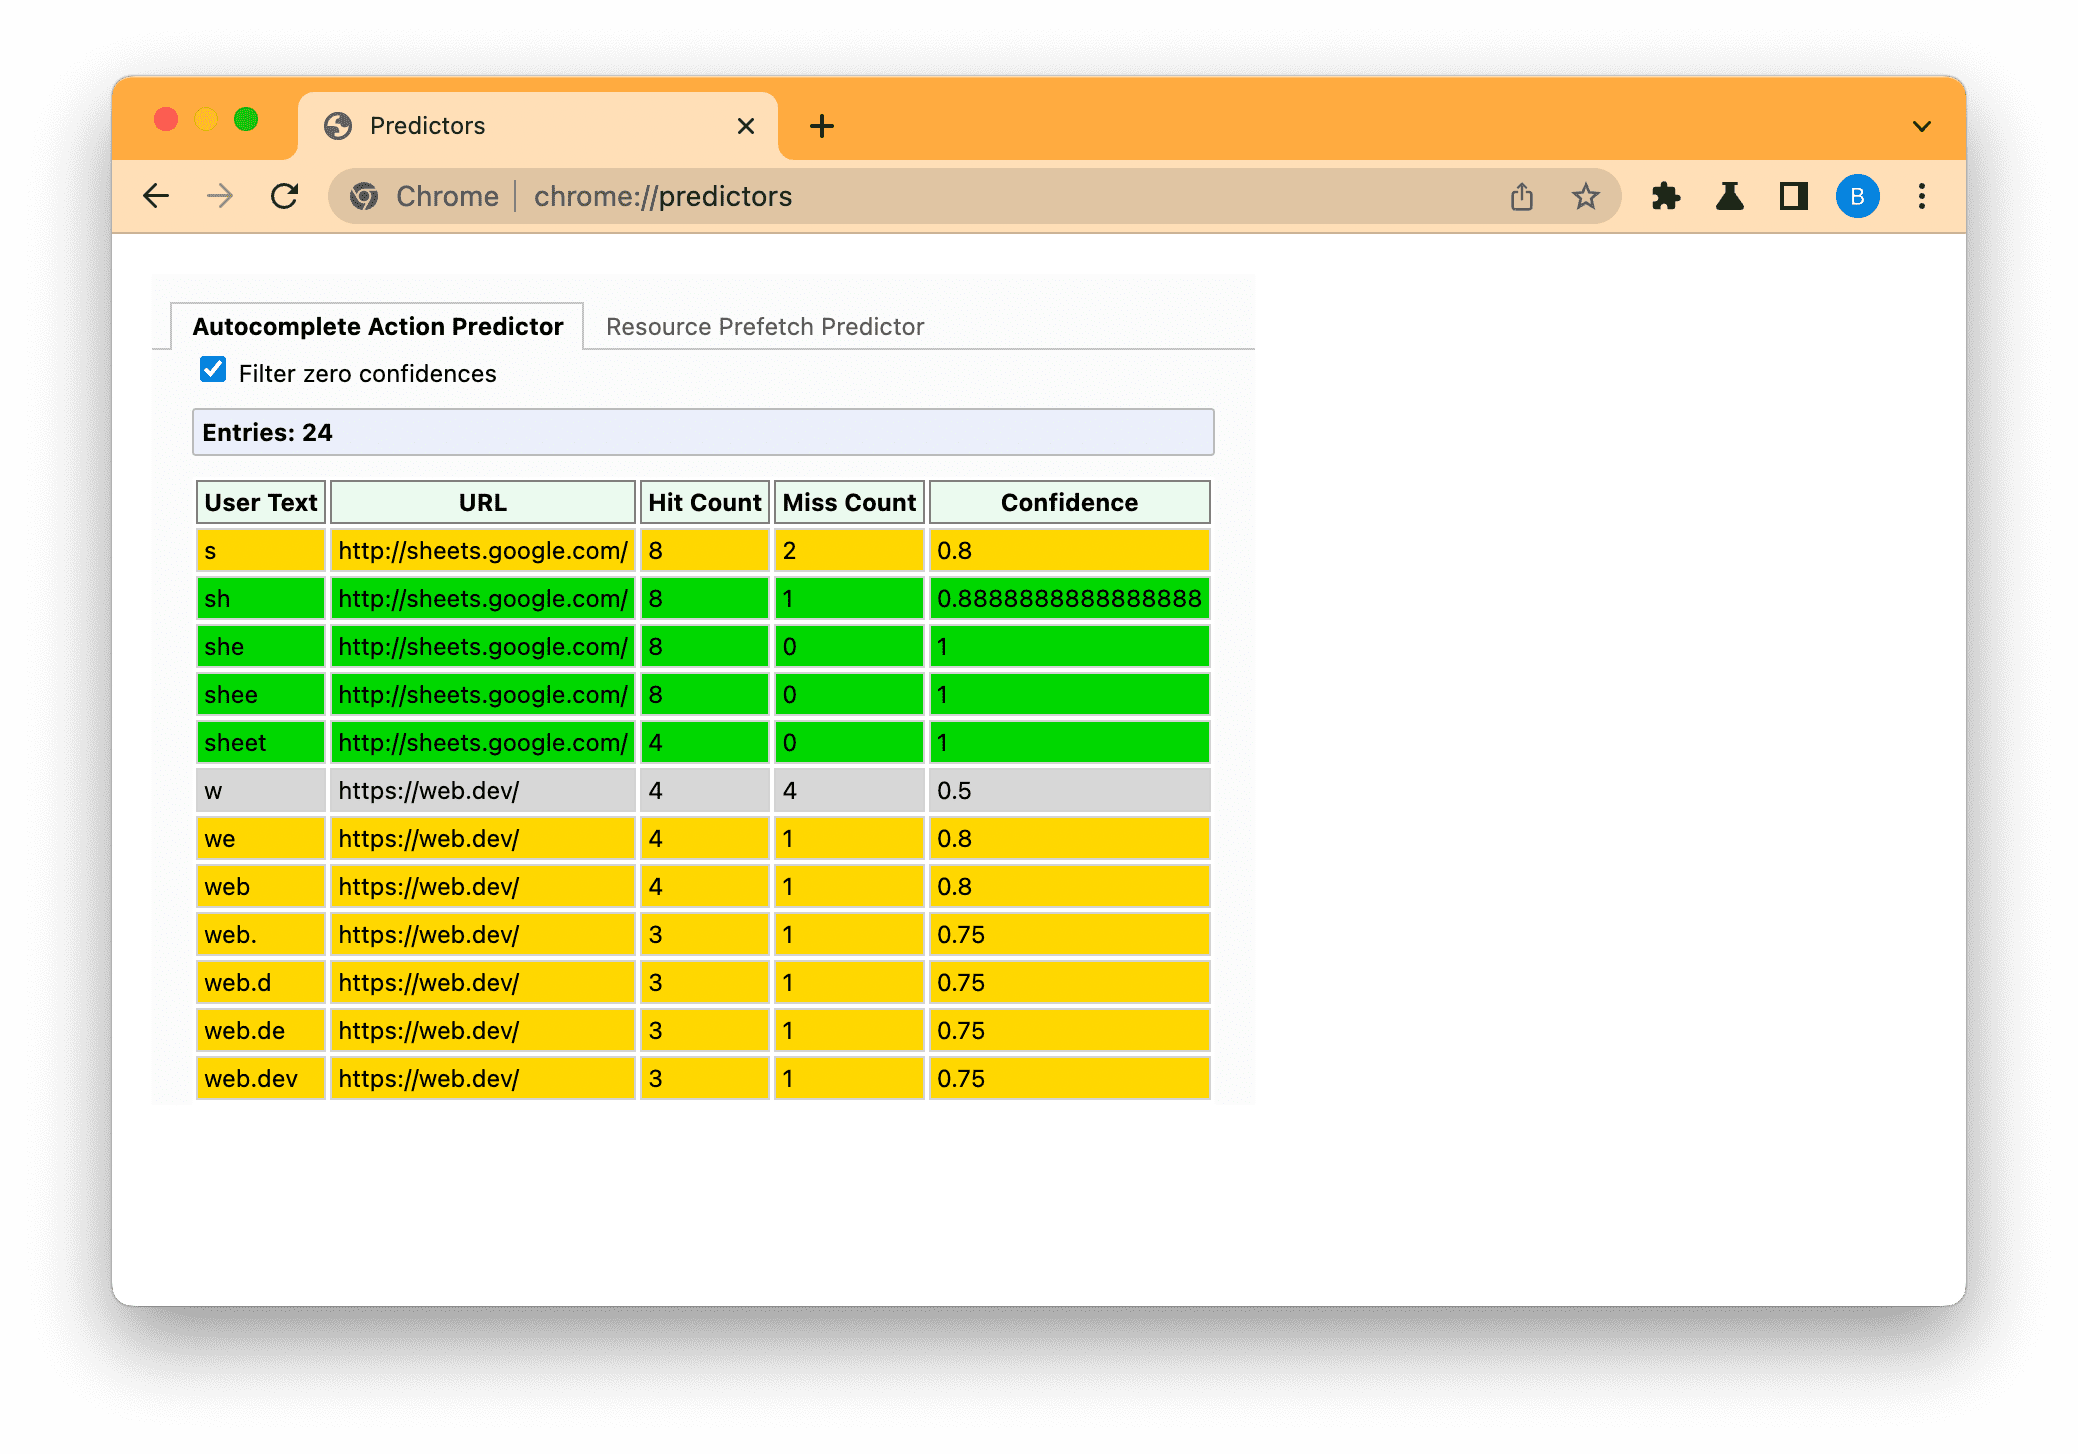 डाले गए टेक्स्ट के आधार पर, कम (स्लेटी), मध्यम (ऐंबर), और ज़्यादा (हरा) सुझाव दिखाने के लिए, Chrome के अनुमान लगाने वाले पेज को फ़िल्टर किया गया है.